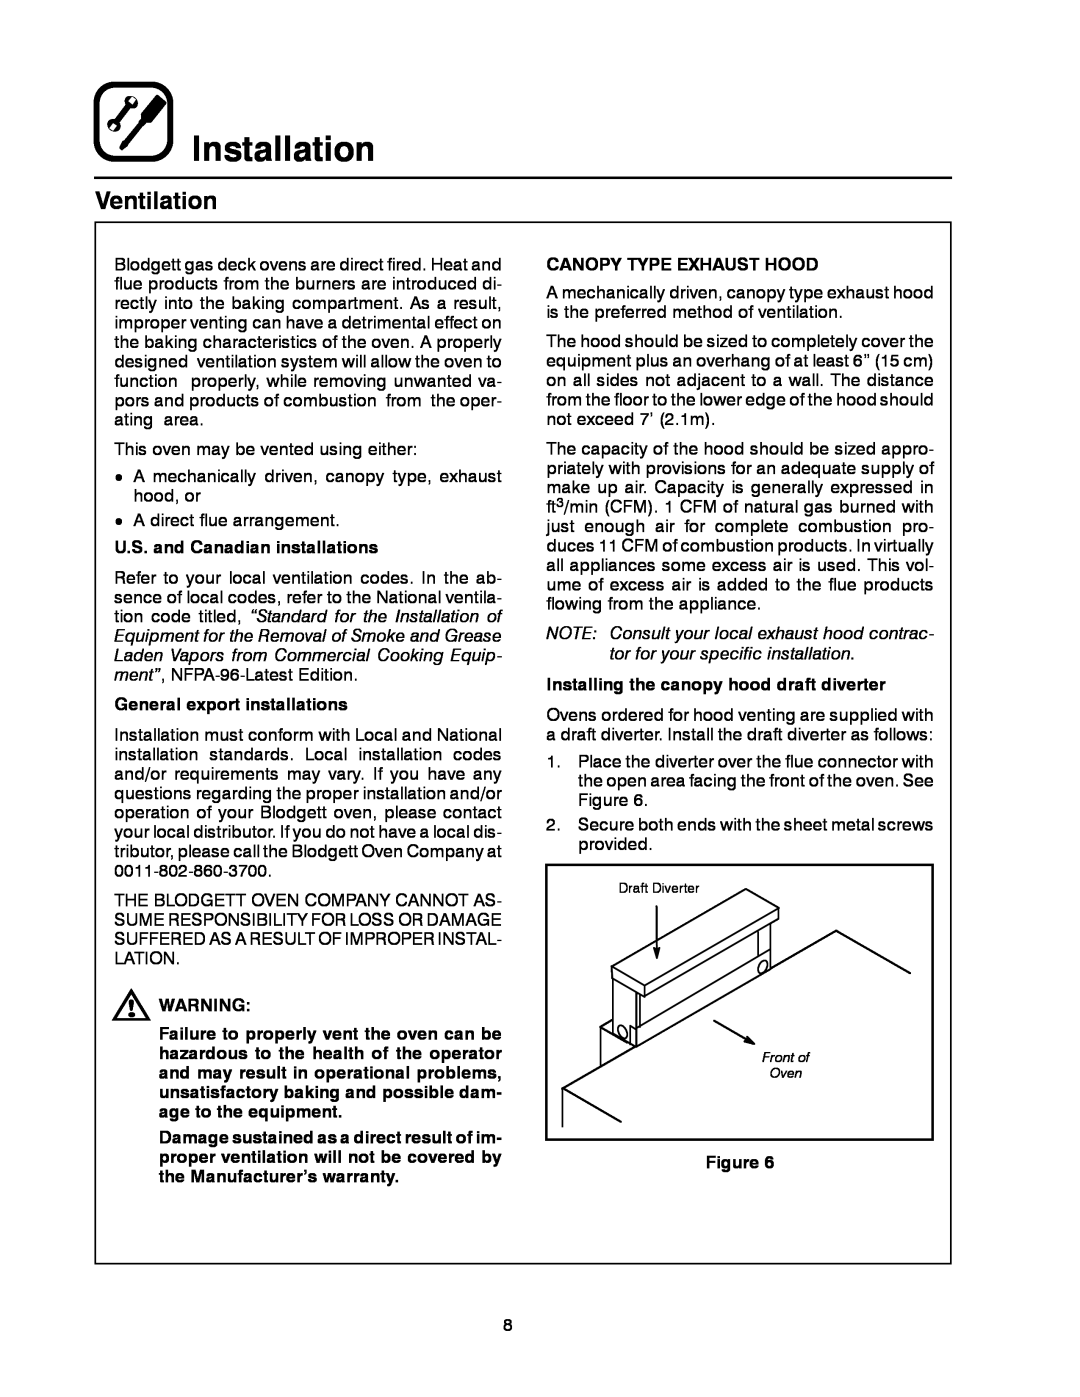 Blodgett 900 SERIES manual Ventilation, Installation, U.S. and Canadian installations, General export installations 